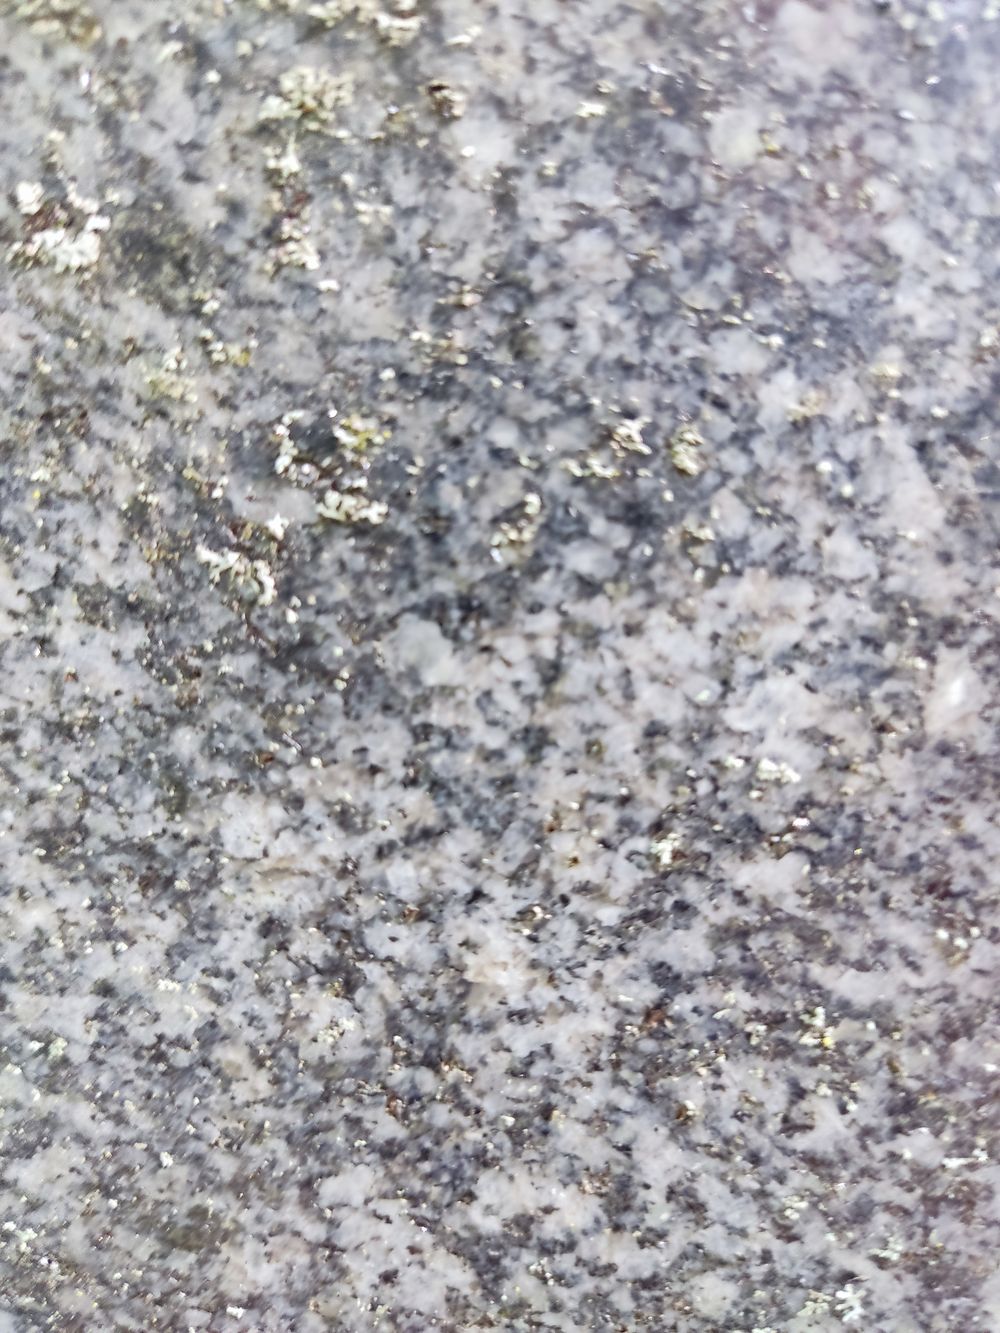 Materiał (granit), z którego wykonano nagrobek Marka Skirgajłło na cmentarzu św. Michała w Rydze, stan z 2022 r